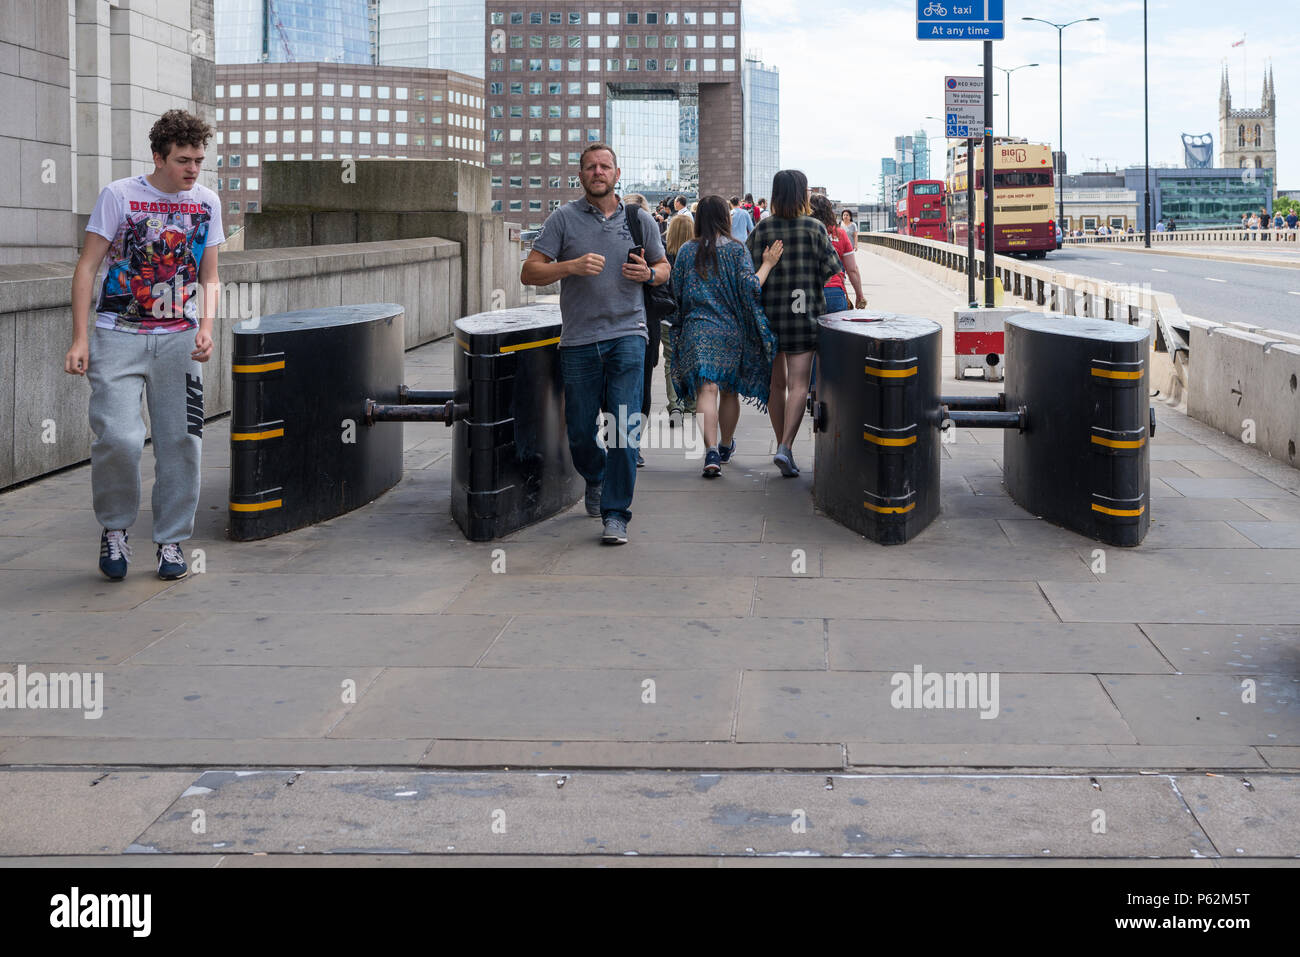 Les piétons passent par les barrières anti-terroristes de défense contre les attaques de véhicules sur le London Bridge, Londres, Angleterre, Royaume-Uni Banque D'Images